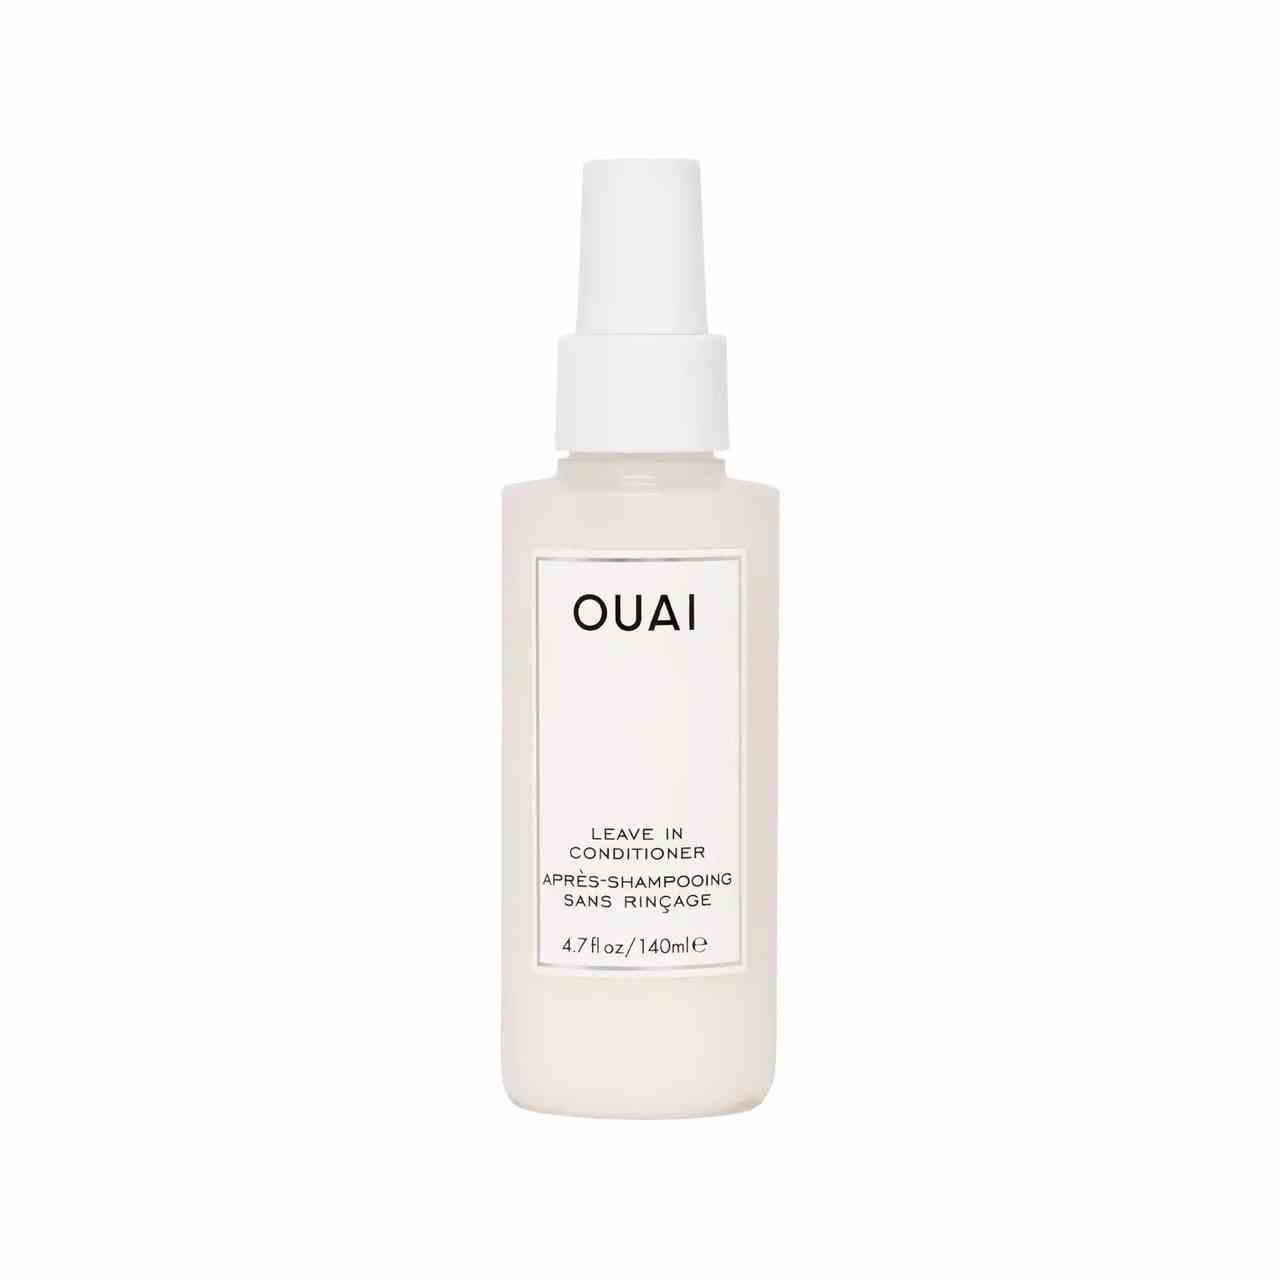 Ouai Leave In Conditioner weiße Sprühflasche auf weißem Hintergrund